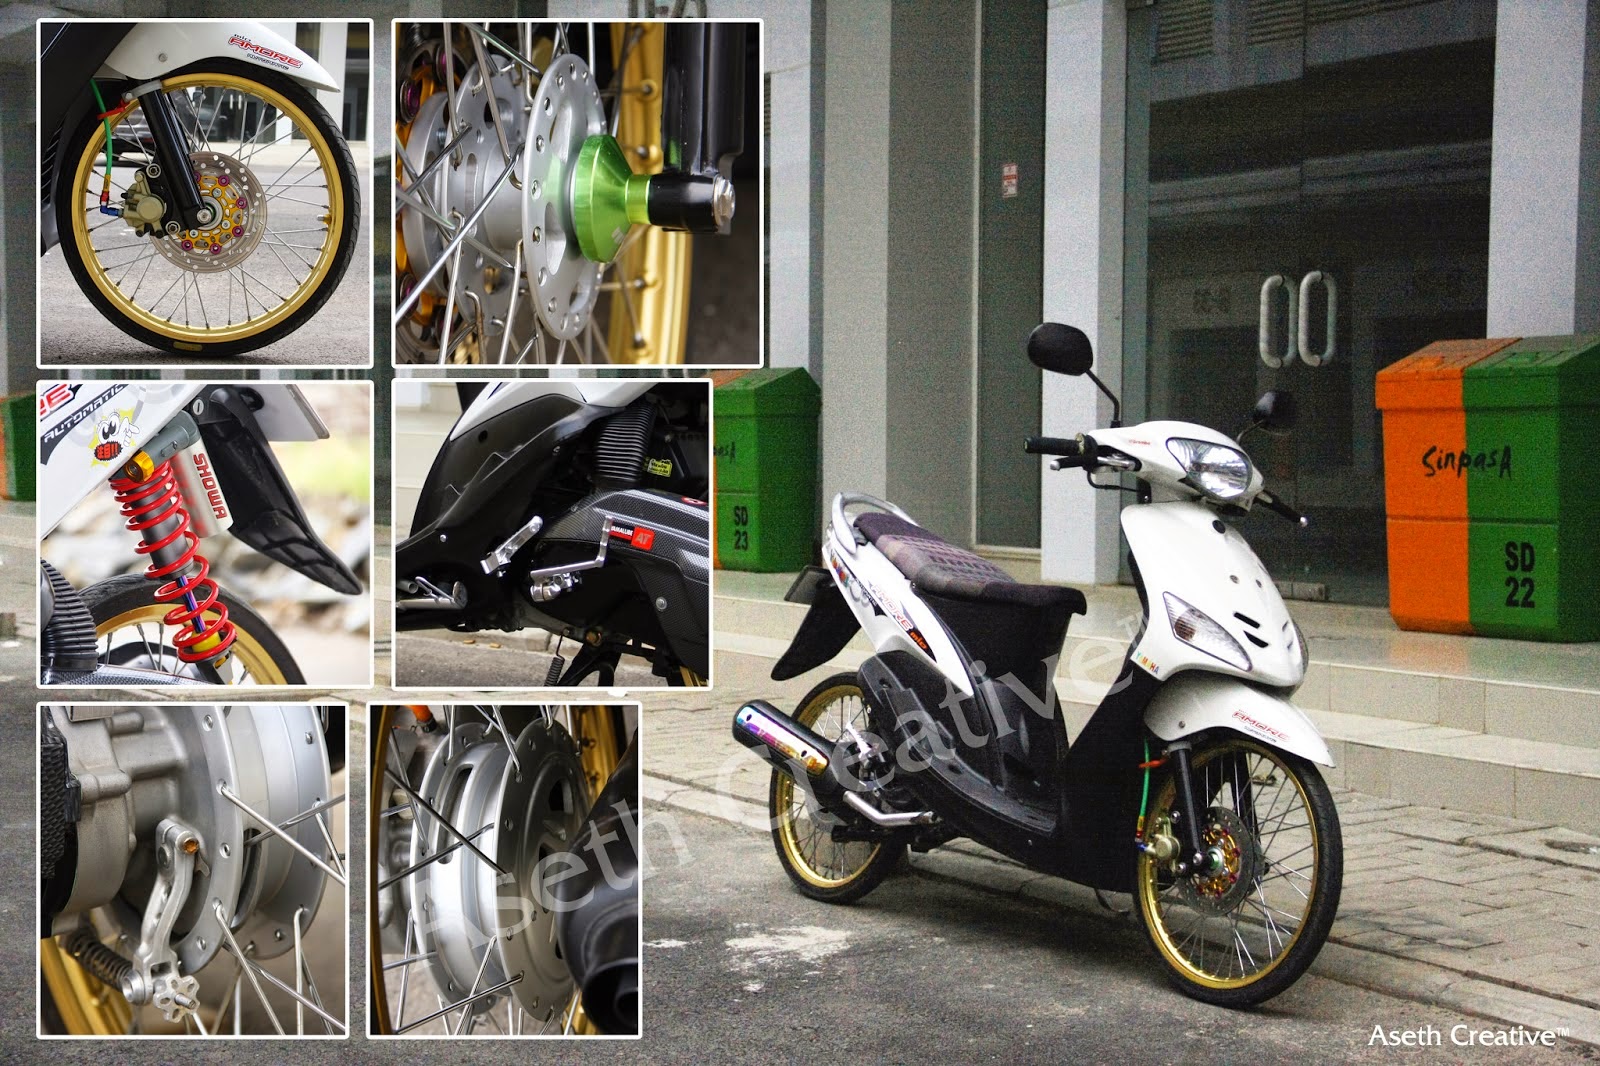  Modifikasi Mio J Versi Thailand Thecitycyclist